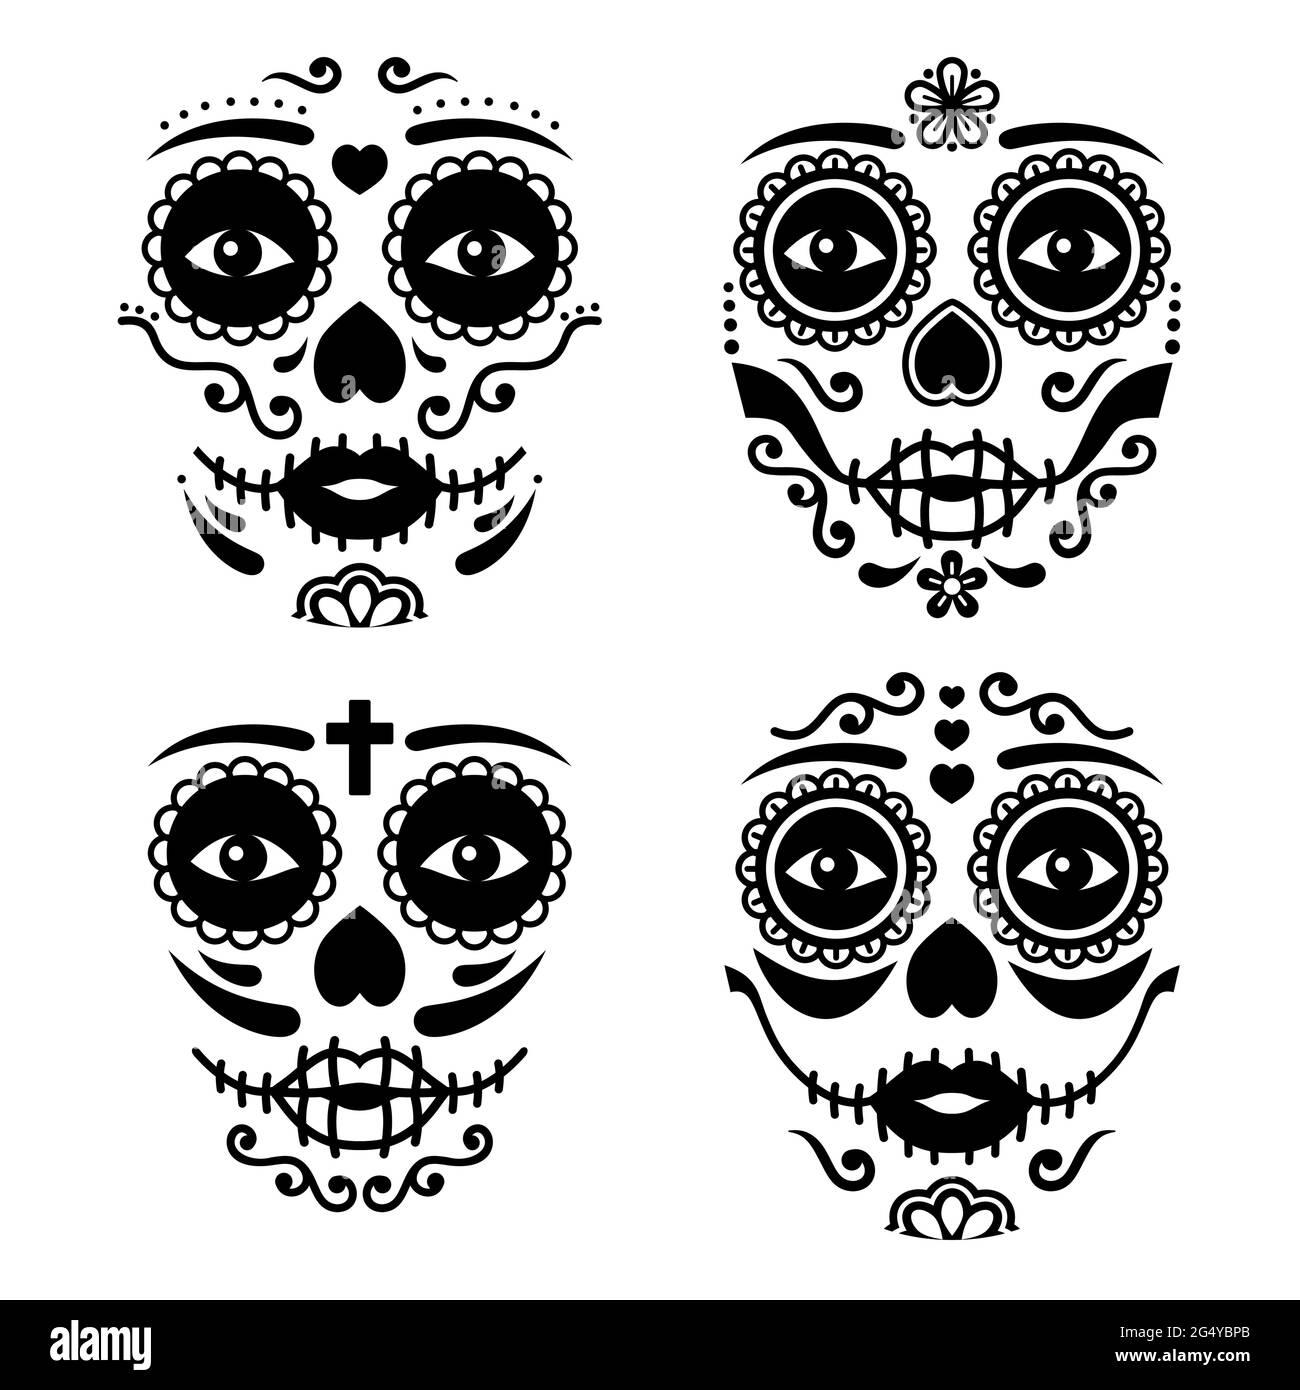 La Catrina mexicaine visage vector design, Dia de los Muertos ou le jour des morts crâne femelle en noir et blanc Illustration de Vecteur